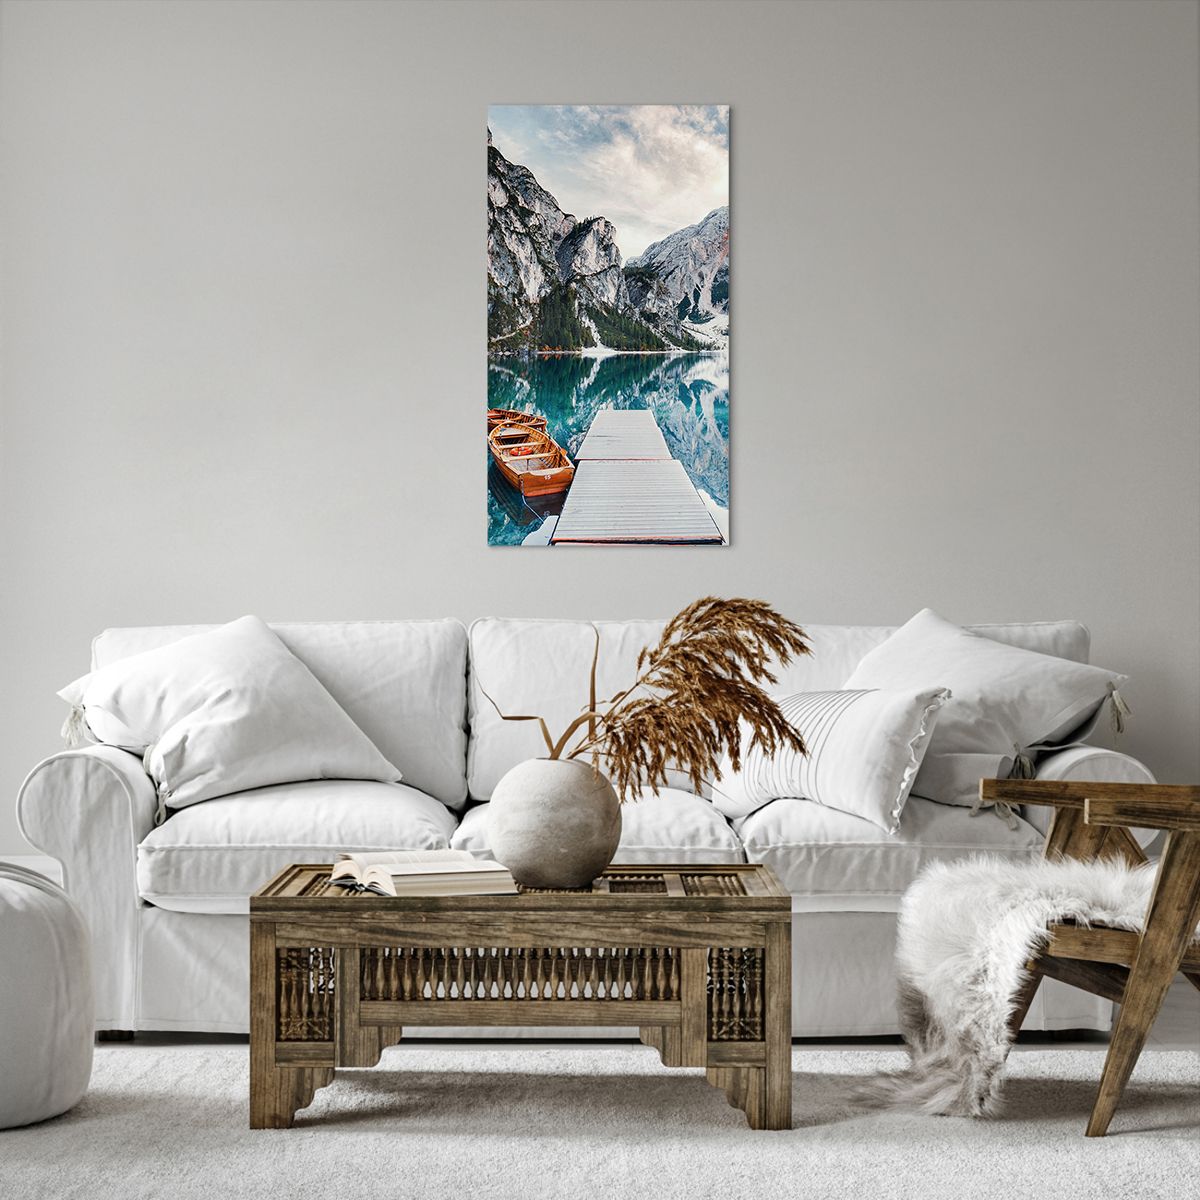 Bild auf Leinwand Landschaft, Bild auf Leinwand Berge, Bild auf Leinwand Alpen, Bild auf Leinwand See, Bild auf Leinwand Natur